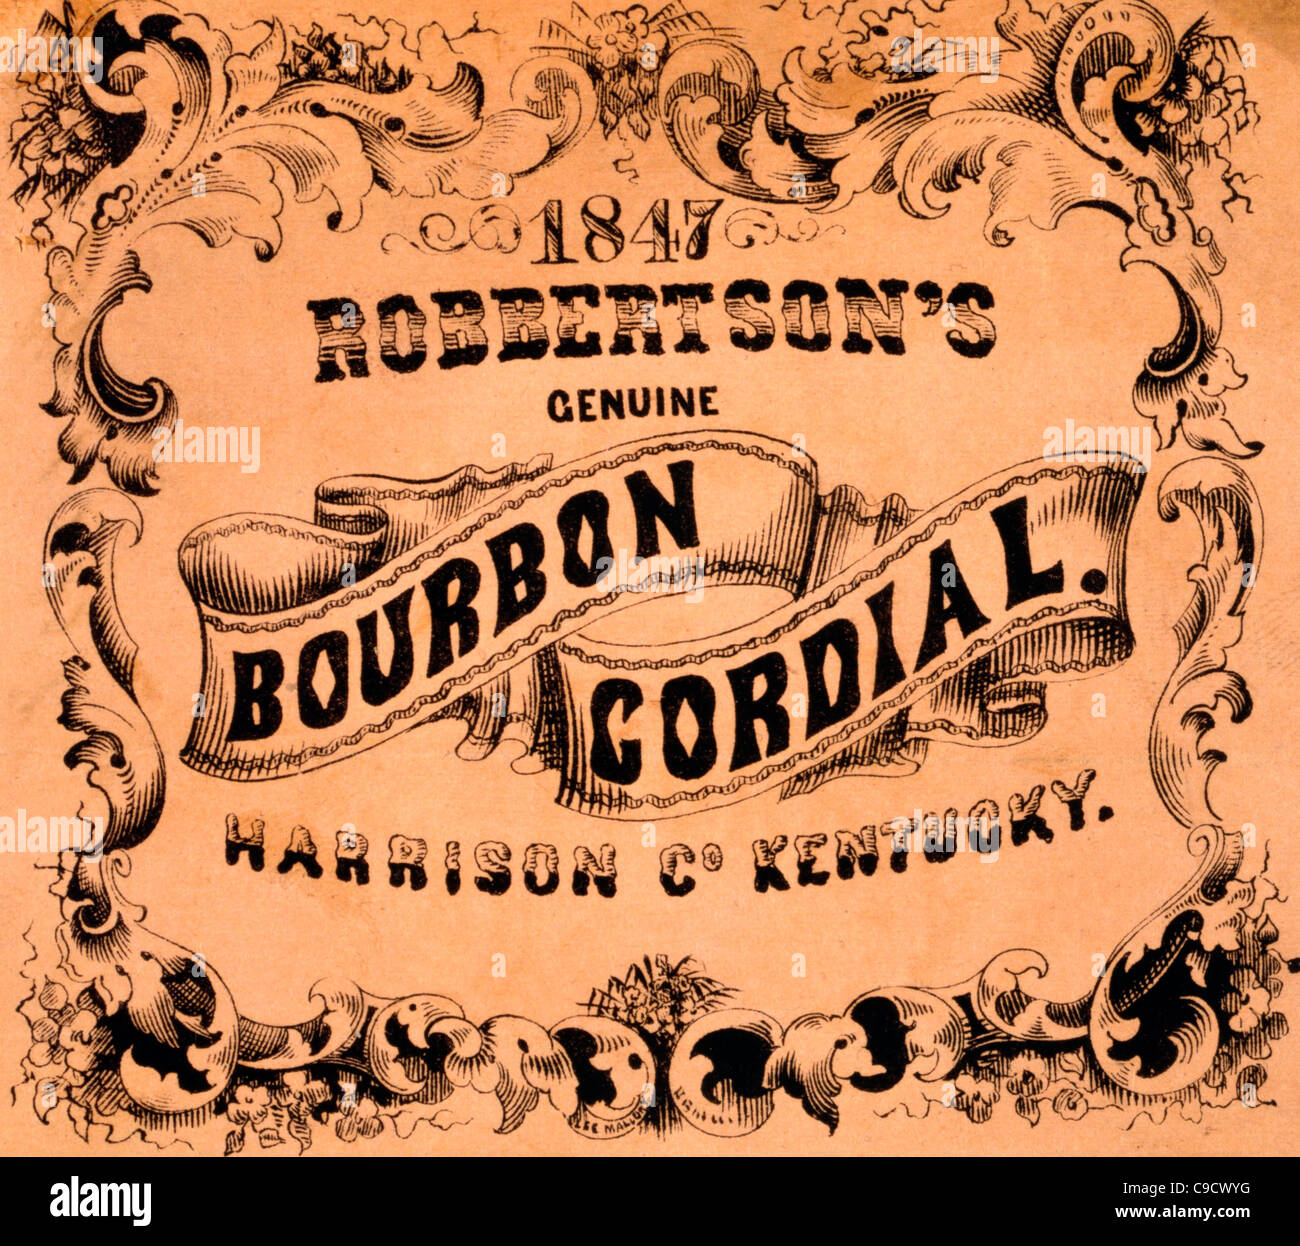 Robertsons echte Bourbon Cordial, Harrison County, Kentucky - Werbung Beschriftung ca. 1857 Stockfoto